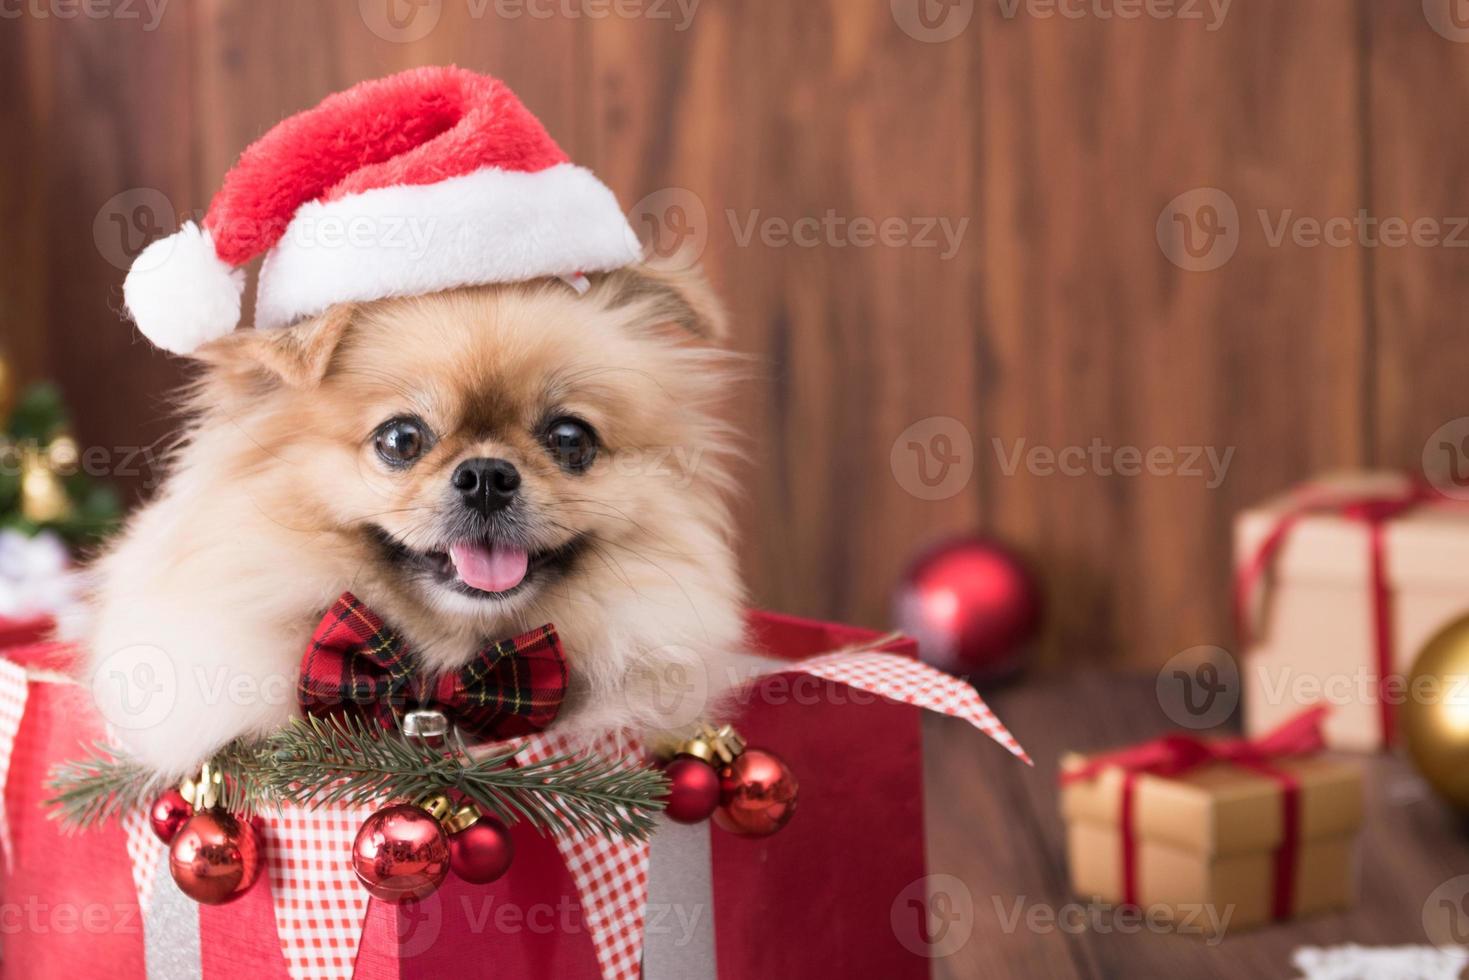 niedliche hundewelpen pomeranian mit weihnachtsmann-hut in geschenkbox auf frohe weihnachten und frohes neues jahr dekoration zum feiern foto